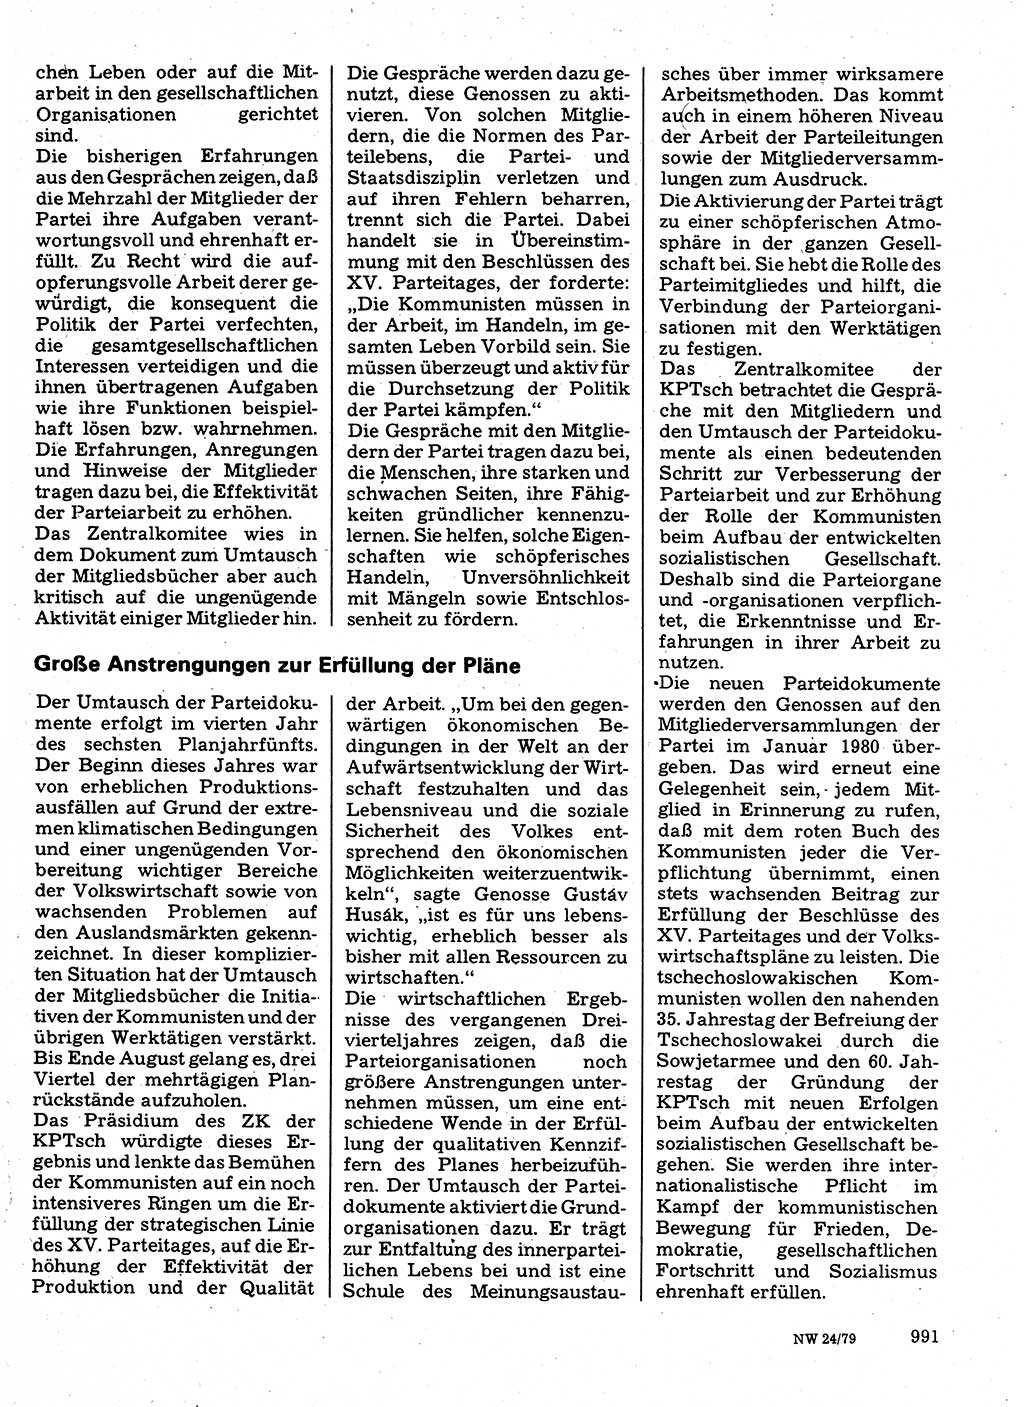 Neuer Weg (NW), Organ des Zentralkomitees (ZK) der SED (Sozialistische Einheitspartei Deutschlands) für Fragen des Parteilebens, 34. Jahrgang [Deutsche Demokratische Republik (DDR)] 1979, Seite 991 (NW ZK SED DDR 1979, S. 991)